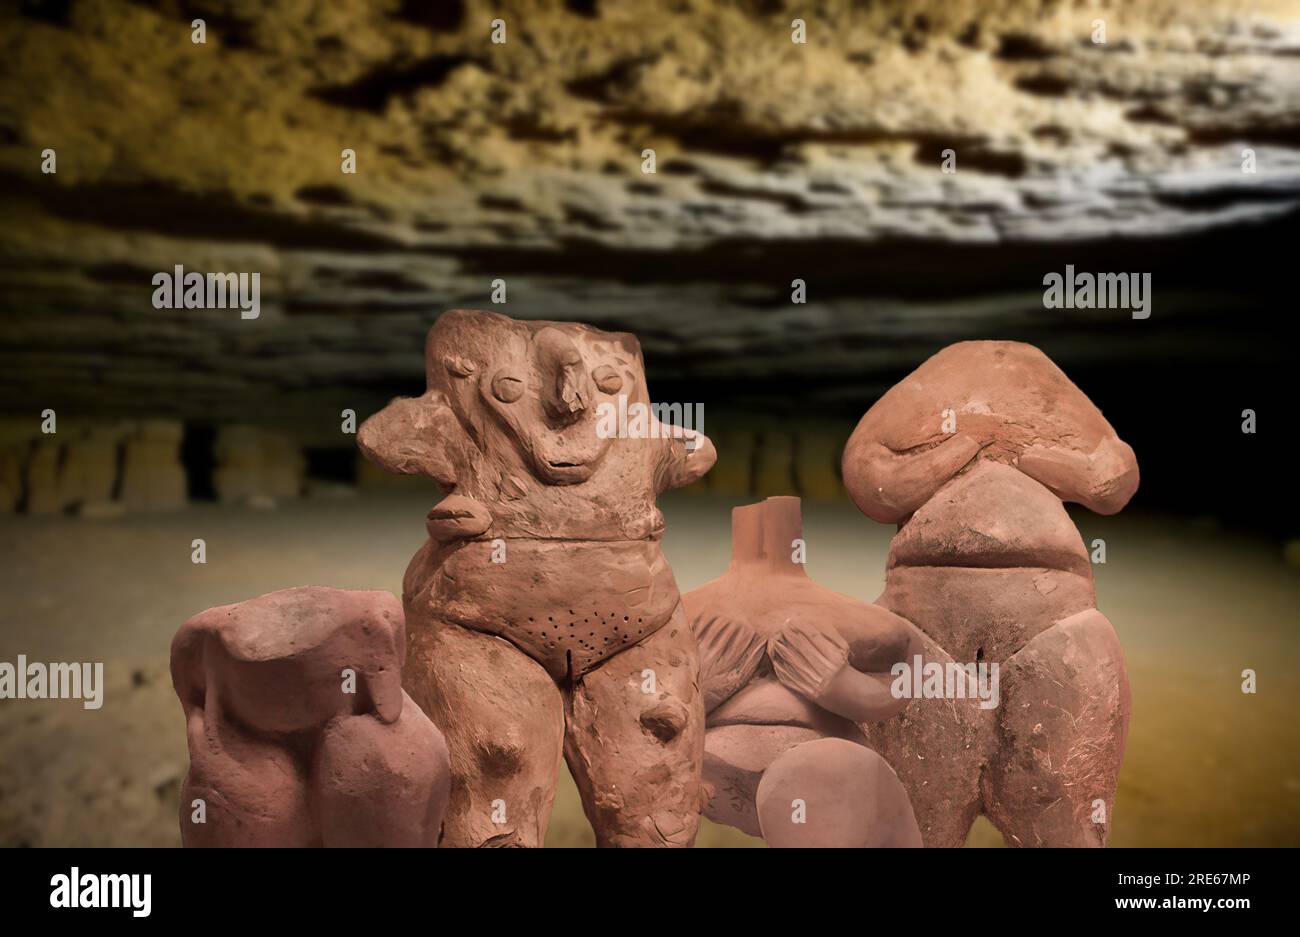 Art néolithique - quelques statuettes datant de l'époque néolithique Banque D'Images